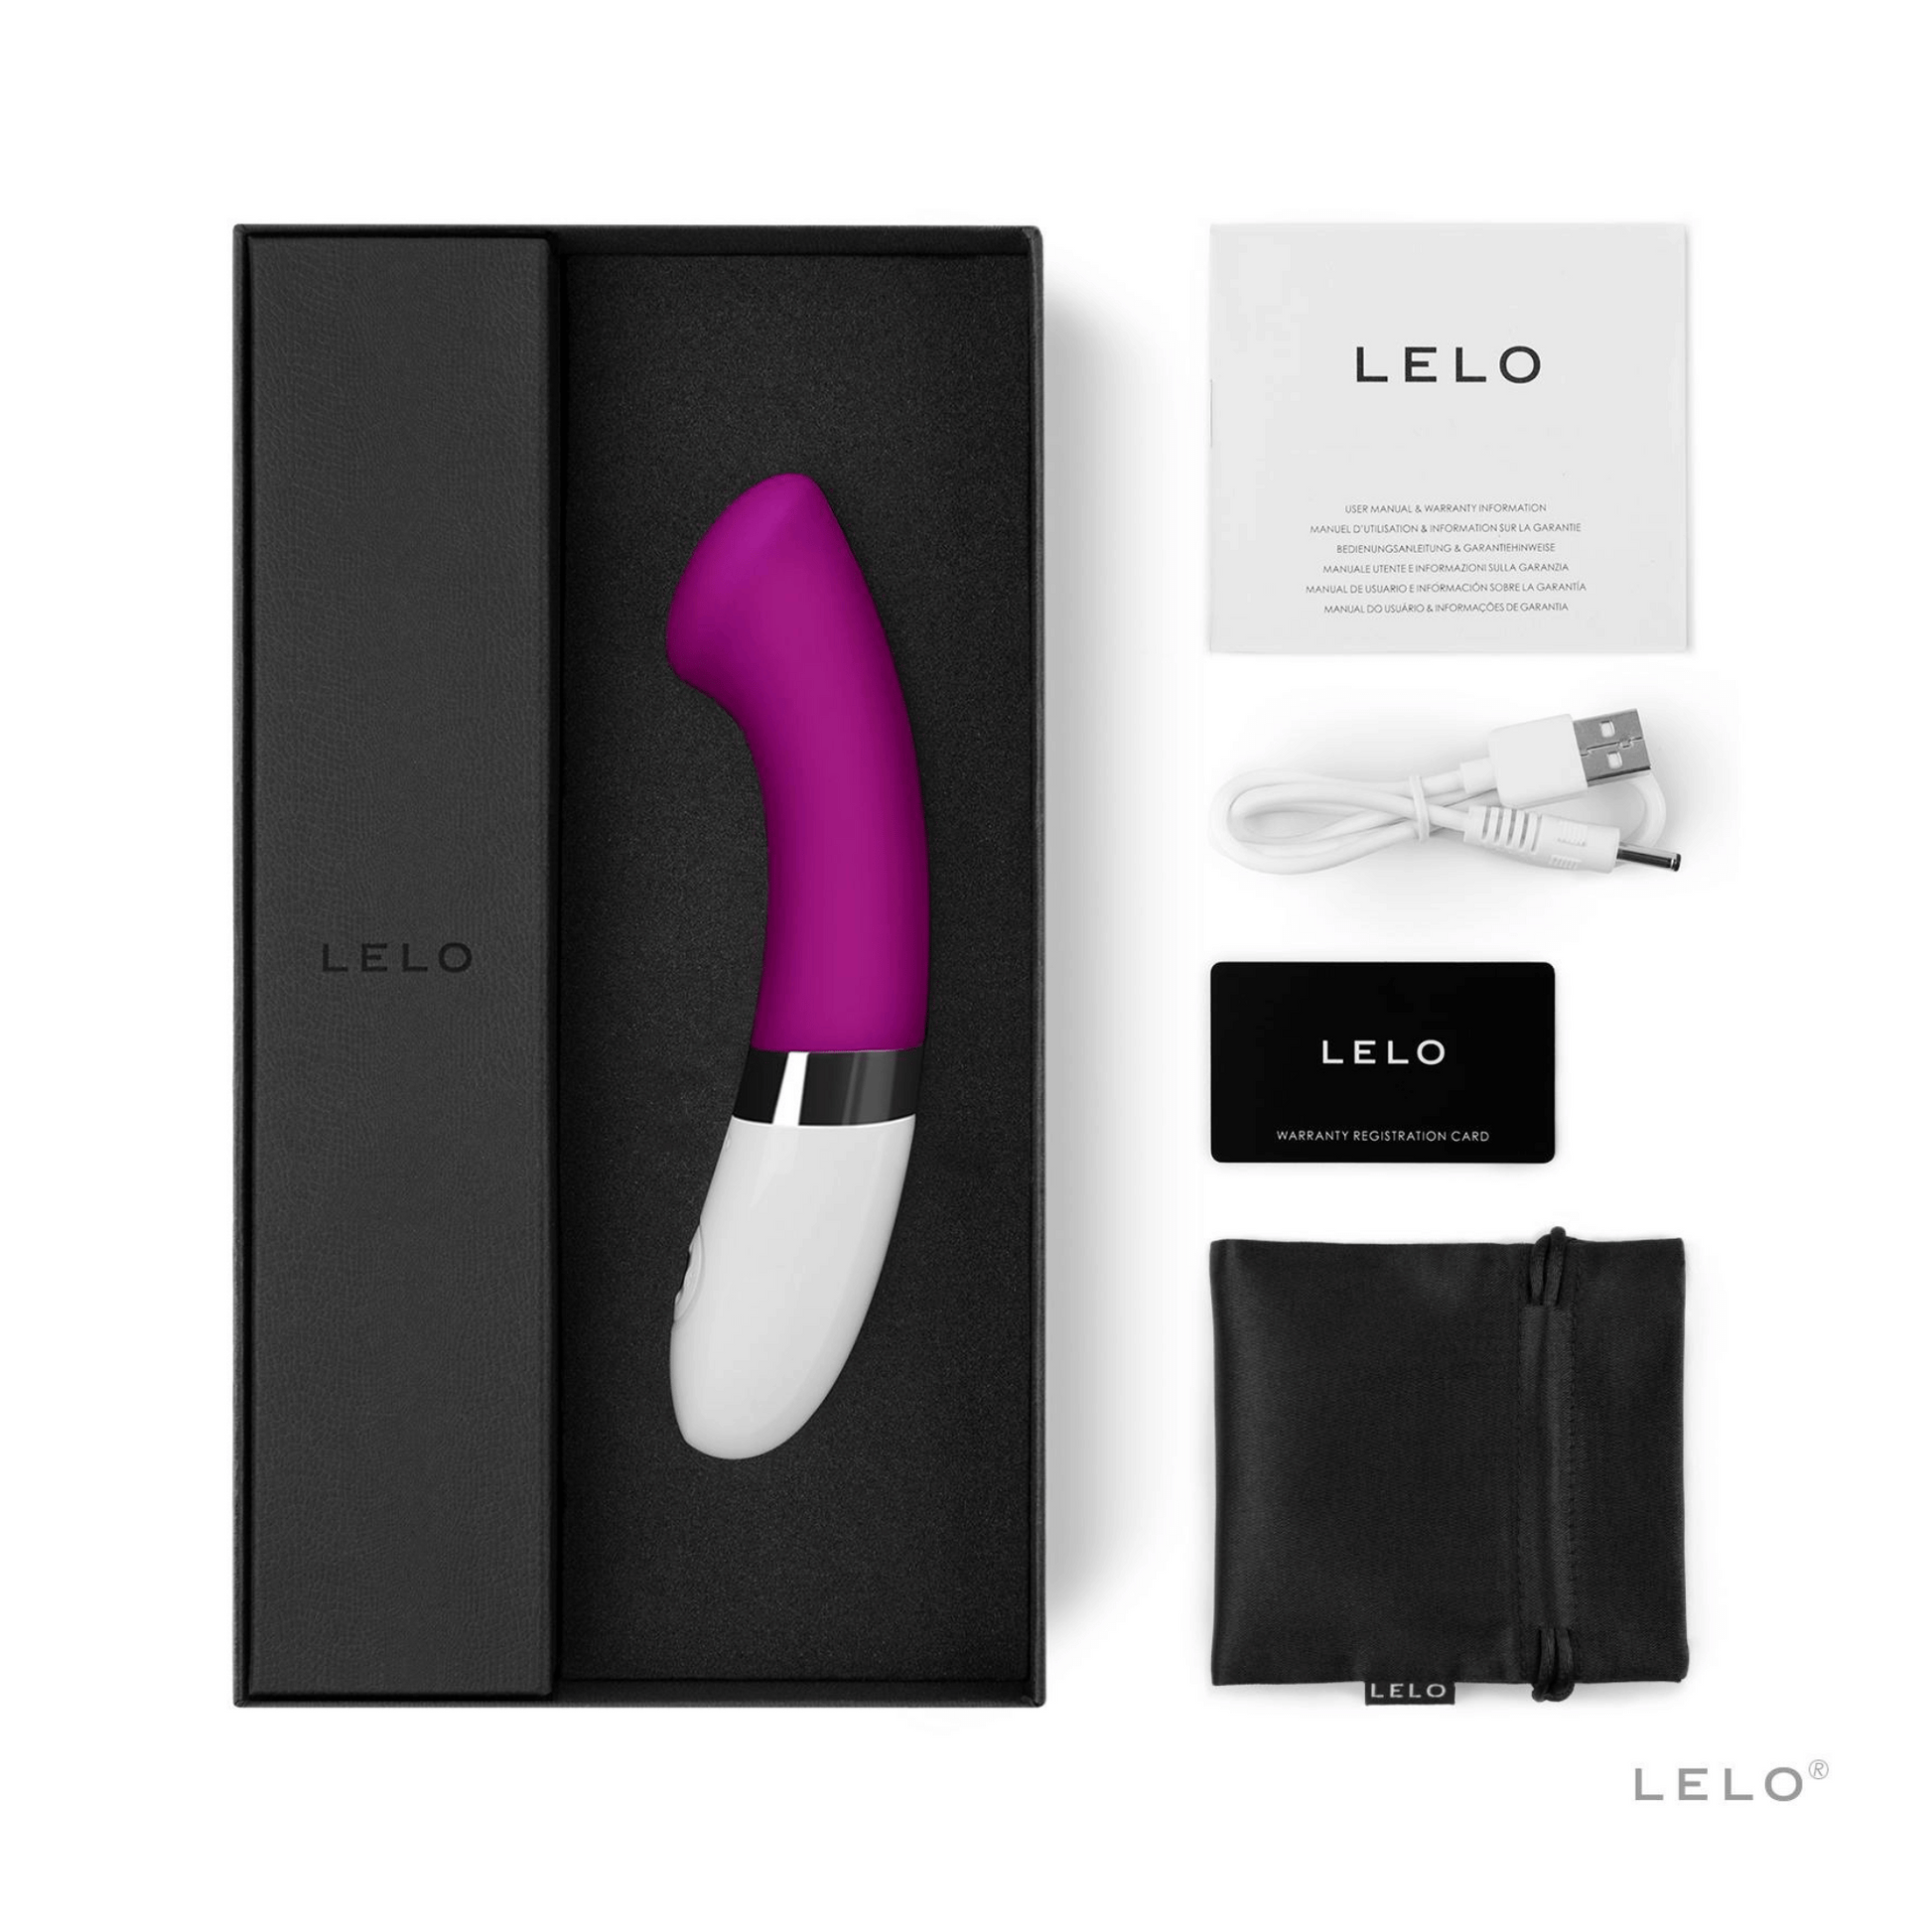 Vibromasseur de luxe Gigi 2 de LELO en couleur rose intense, avec accessoires complets, offert par Oh My God'Z pour une expérience sensorielle unique.